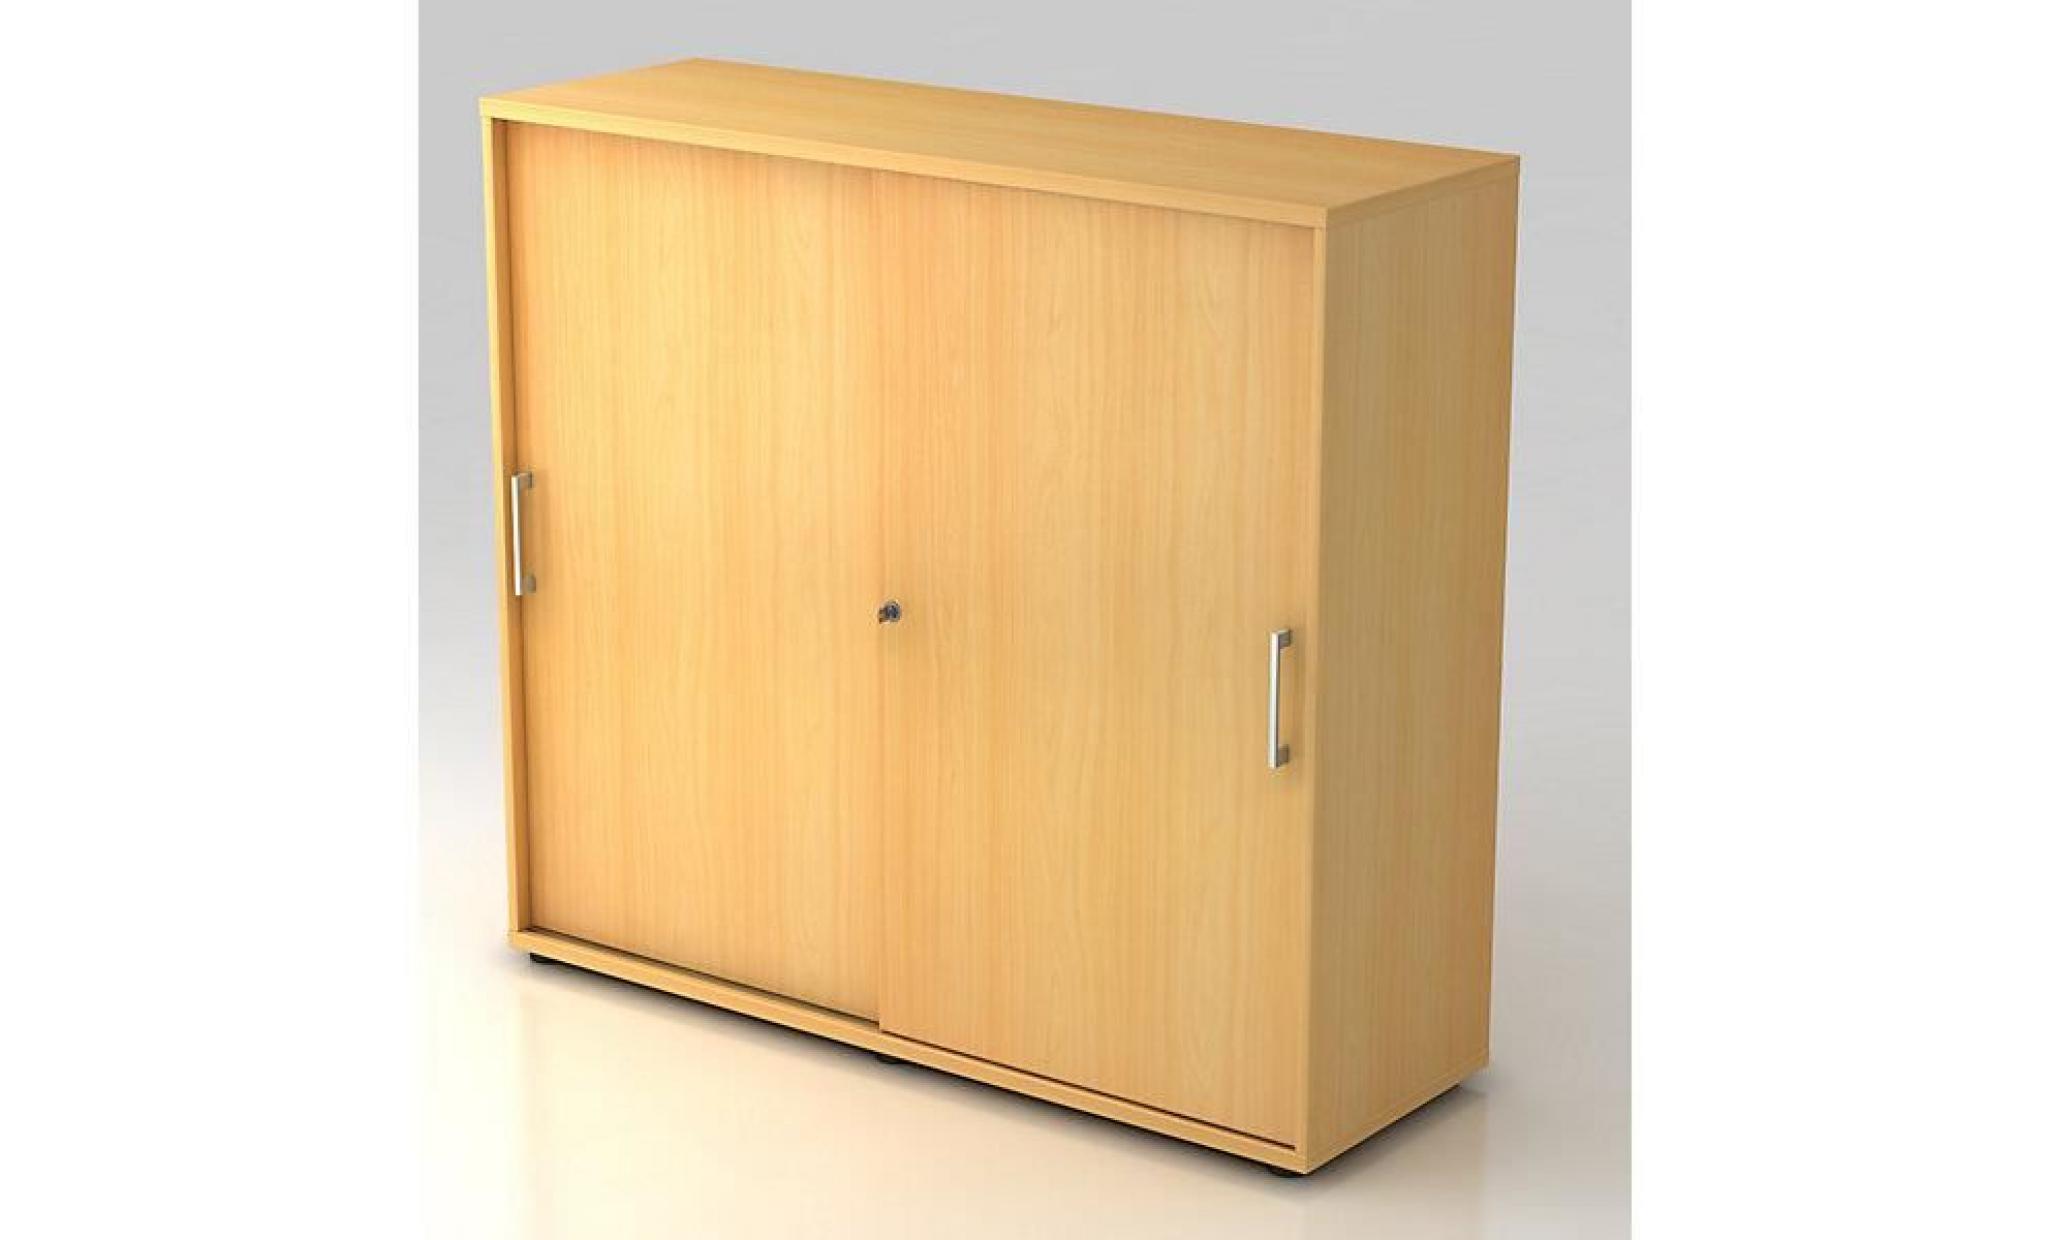 office akktiv armoire à portes coulissantes   hauteur 760 mm, 1 tablette   façon hêtre   armoire de bureau armoire à portes pas cher